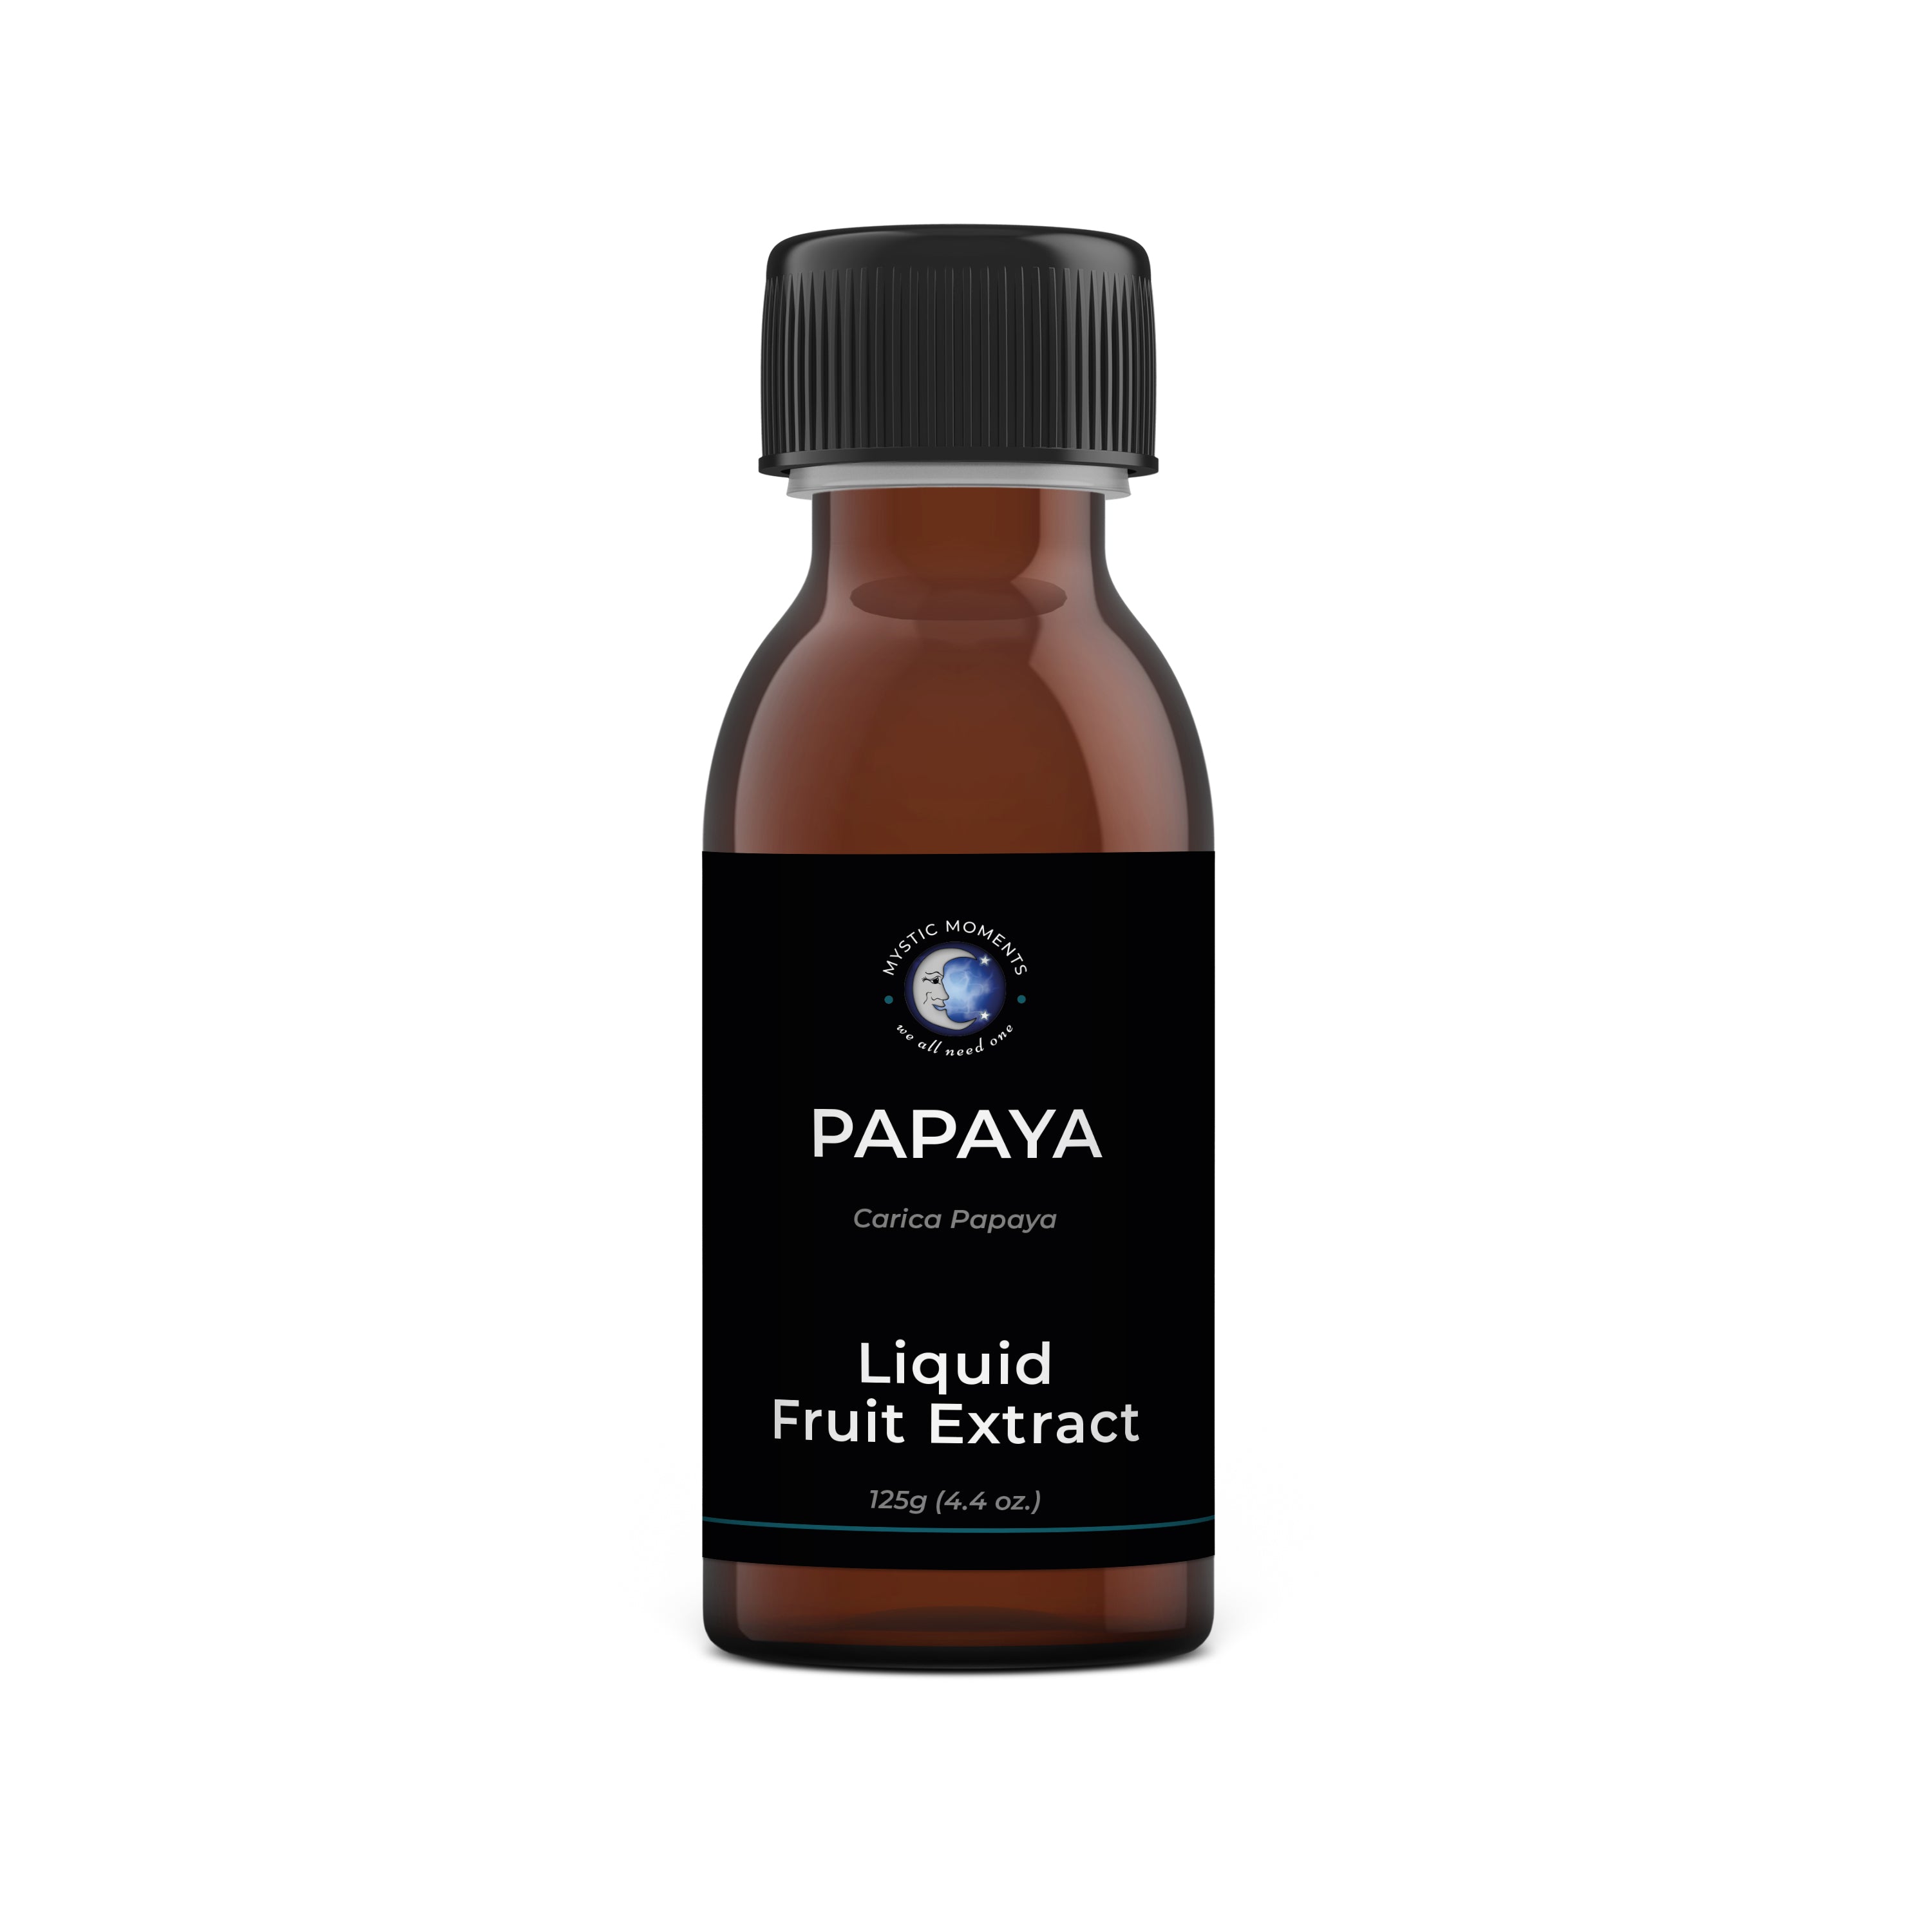 Papaya Liquid Fruit Extract